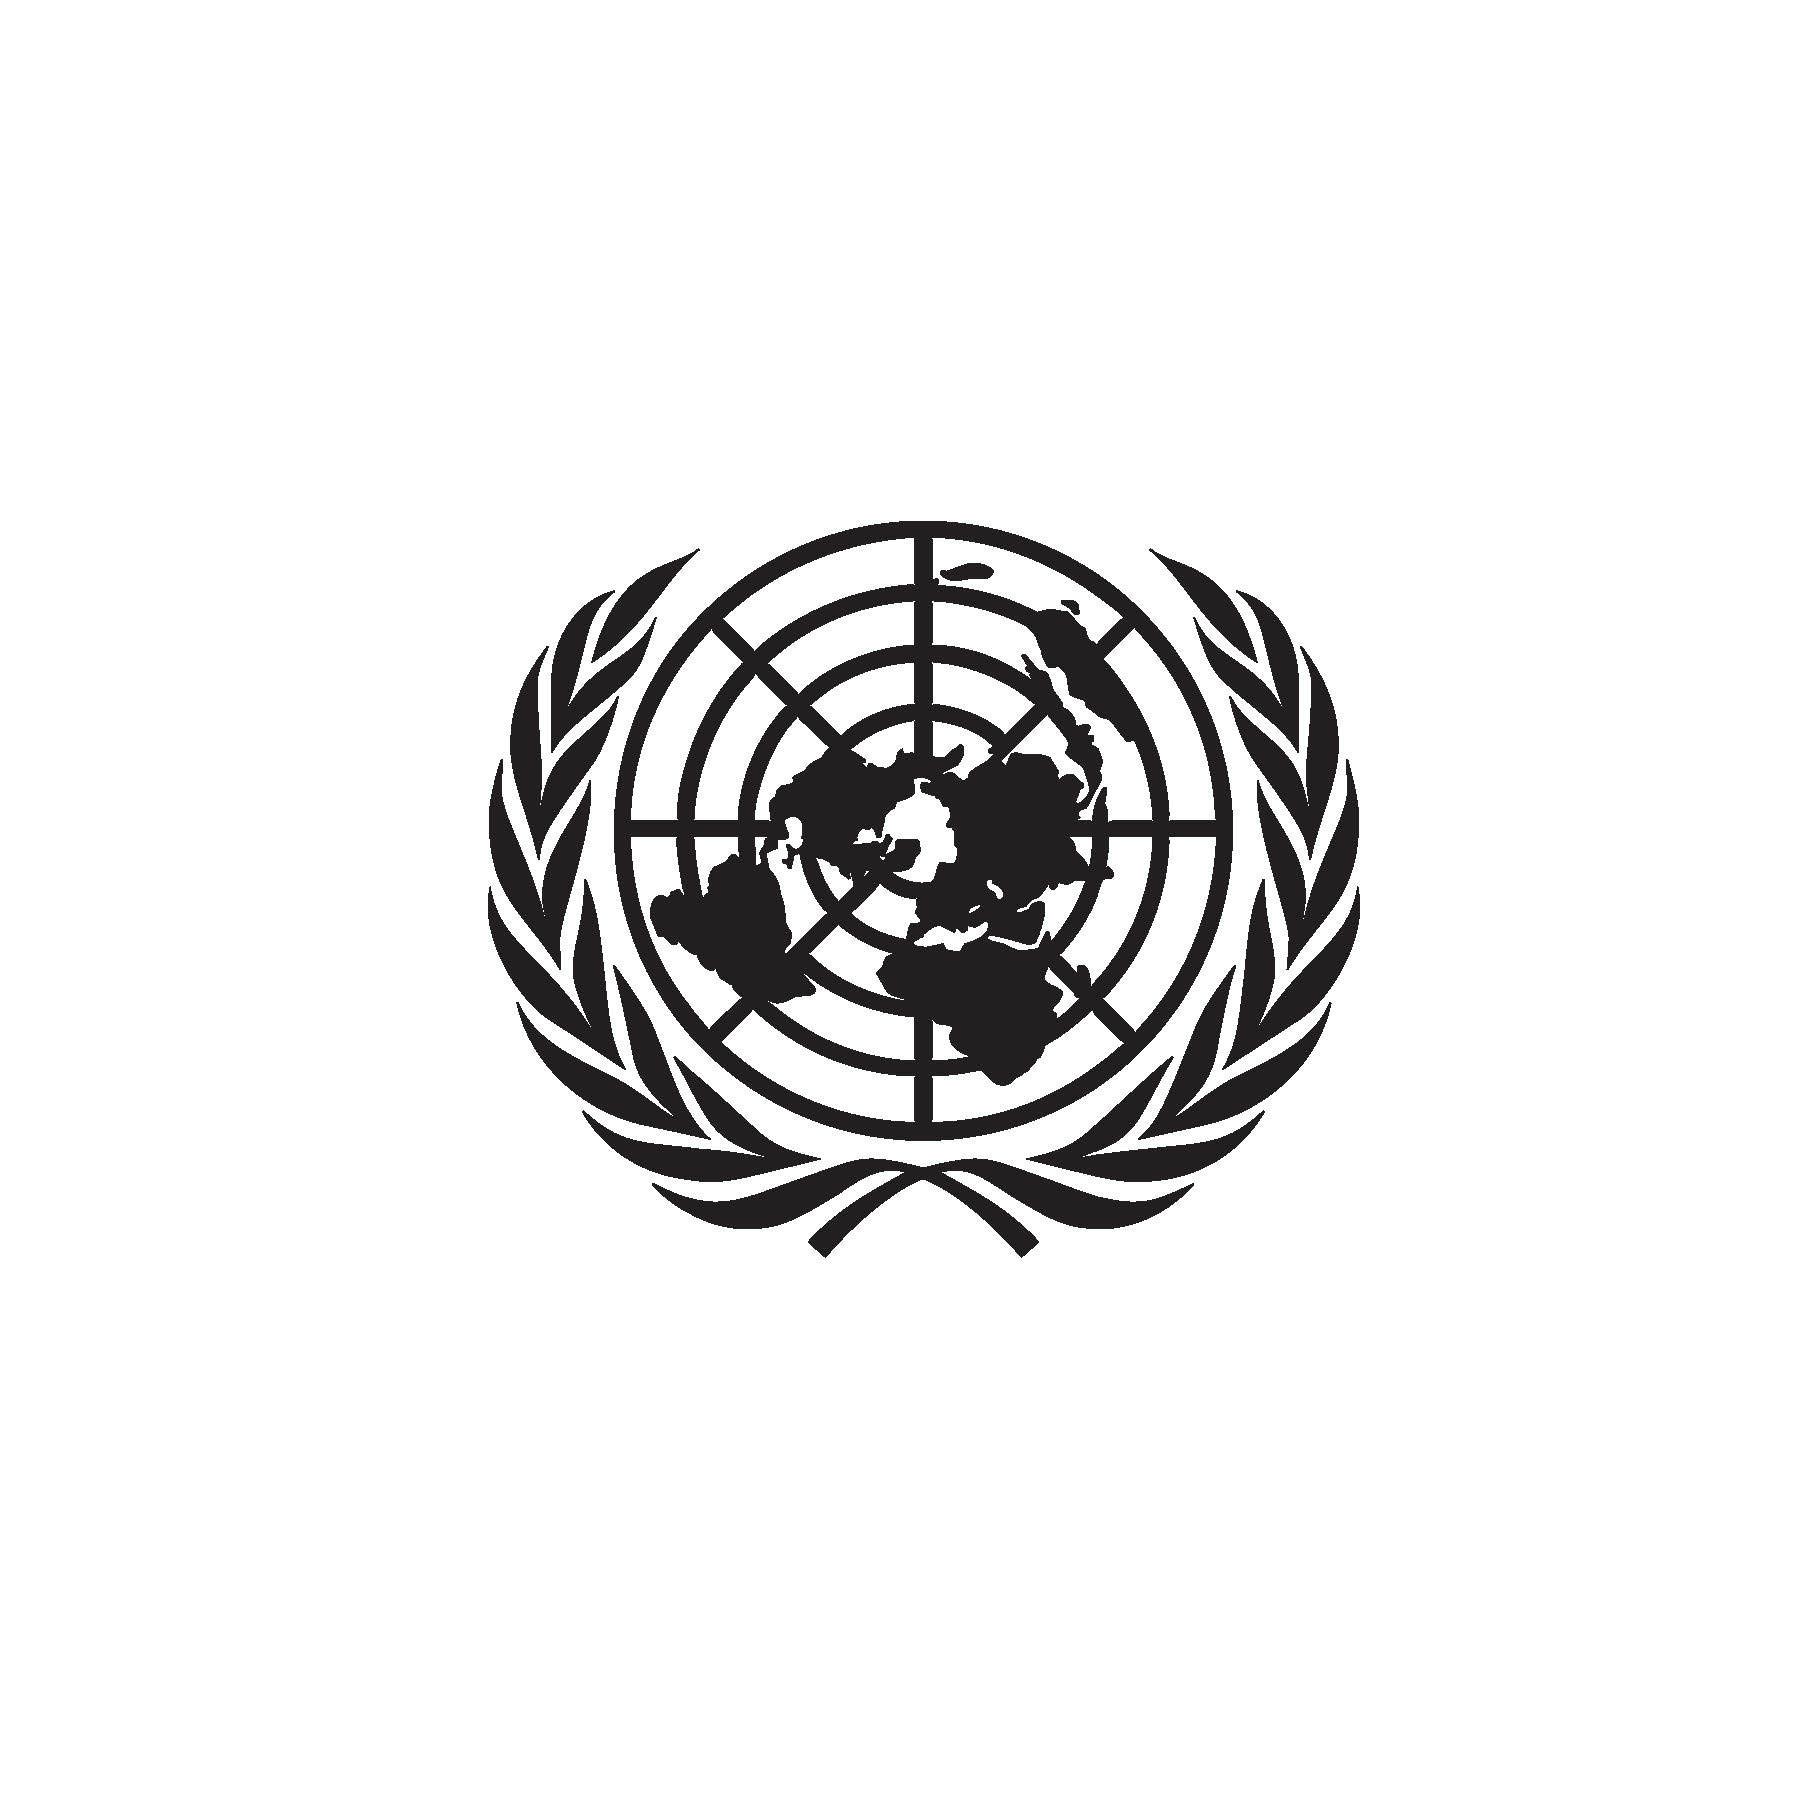 United Nations emblem.